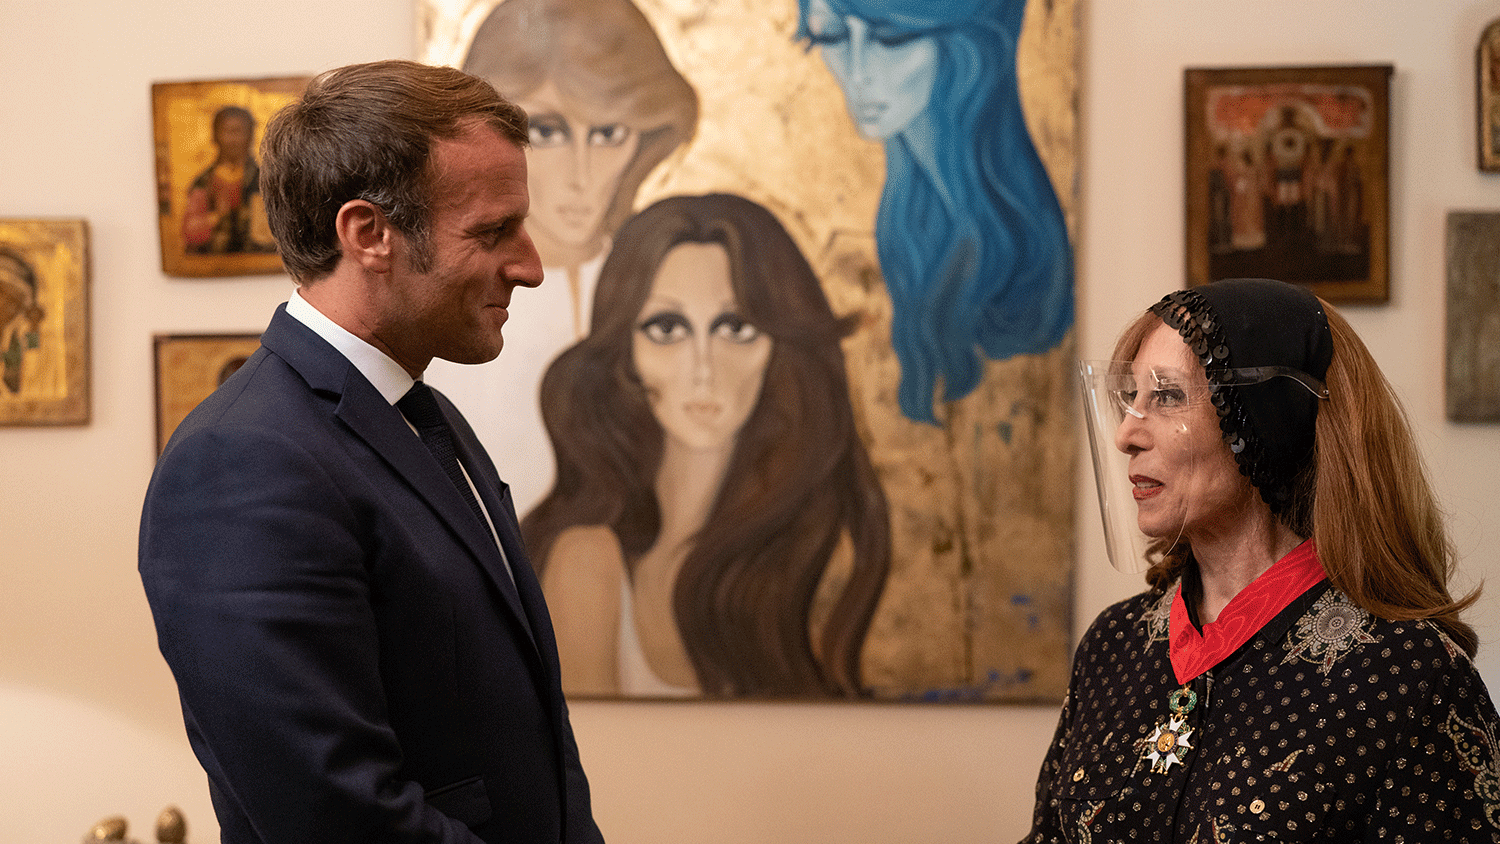 الرئيس الفرنسي إيمانويل ماكرون يقلد فيروز وسام جوقة الشرف الفرنسي